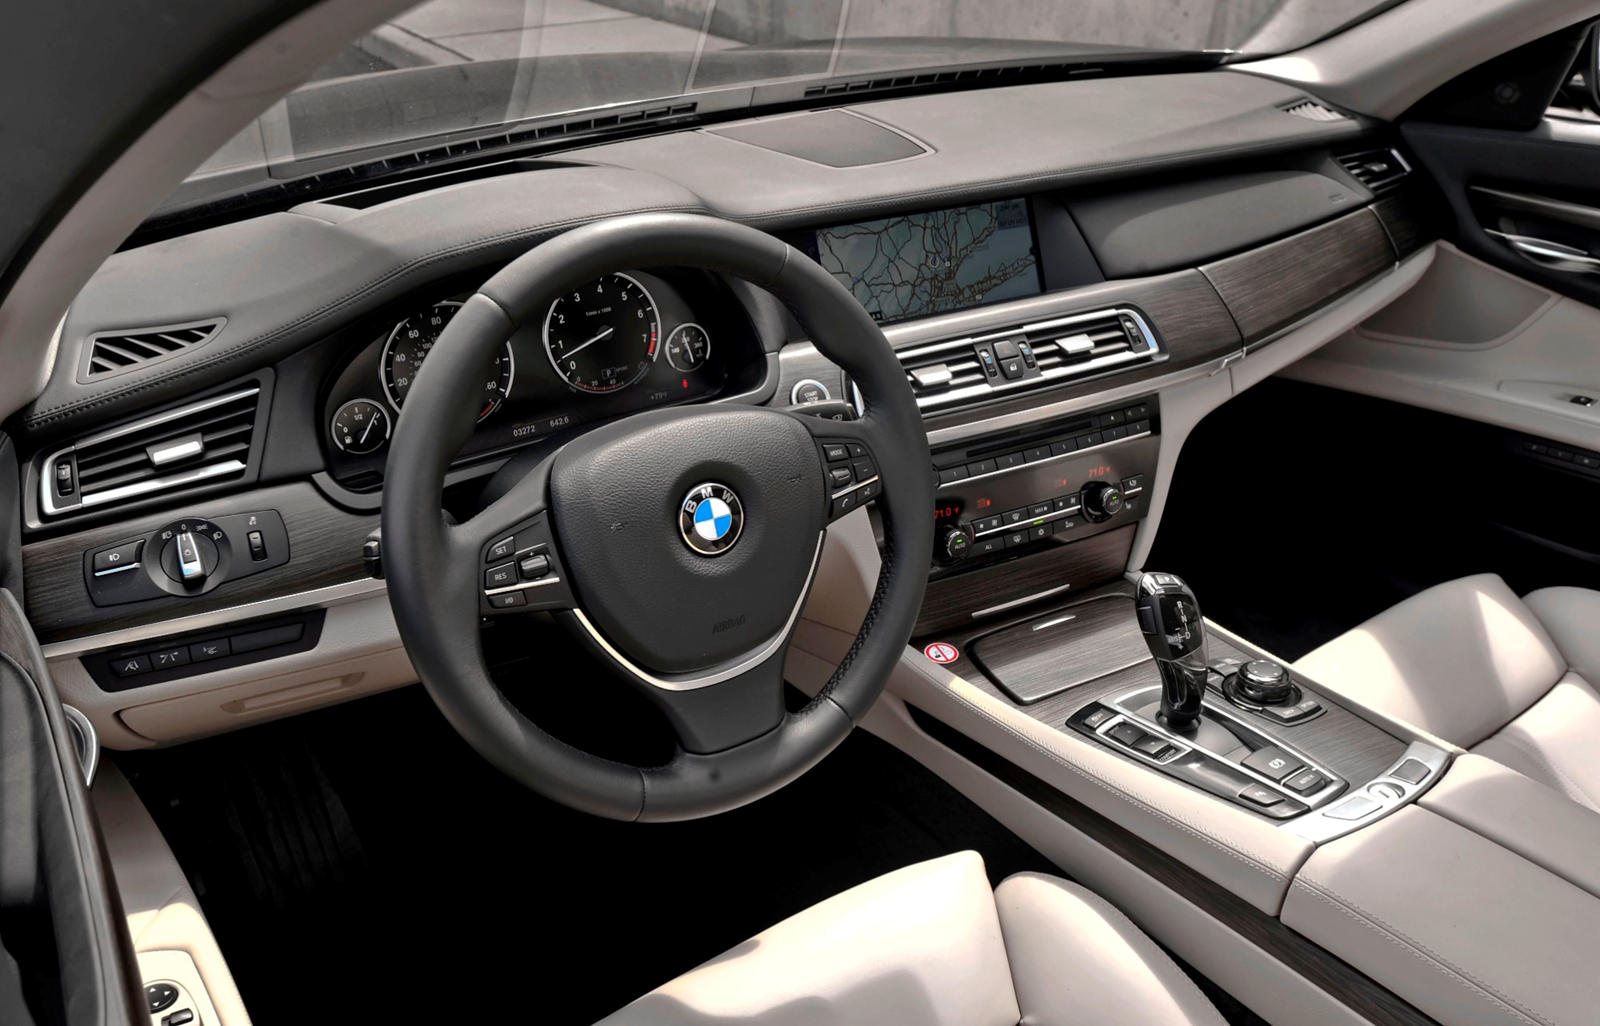 2012 BMW 7 Series Hybrid Dashboard